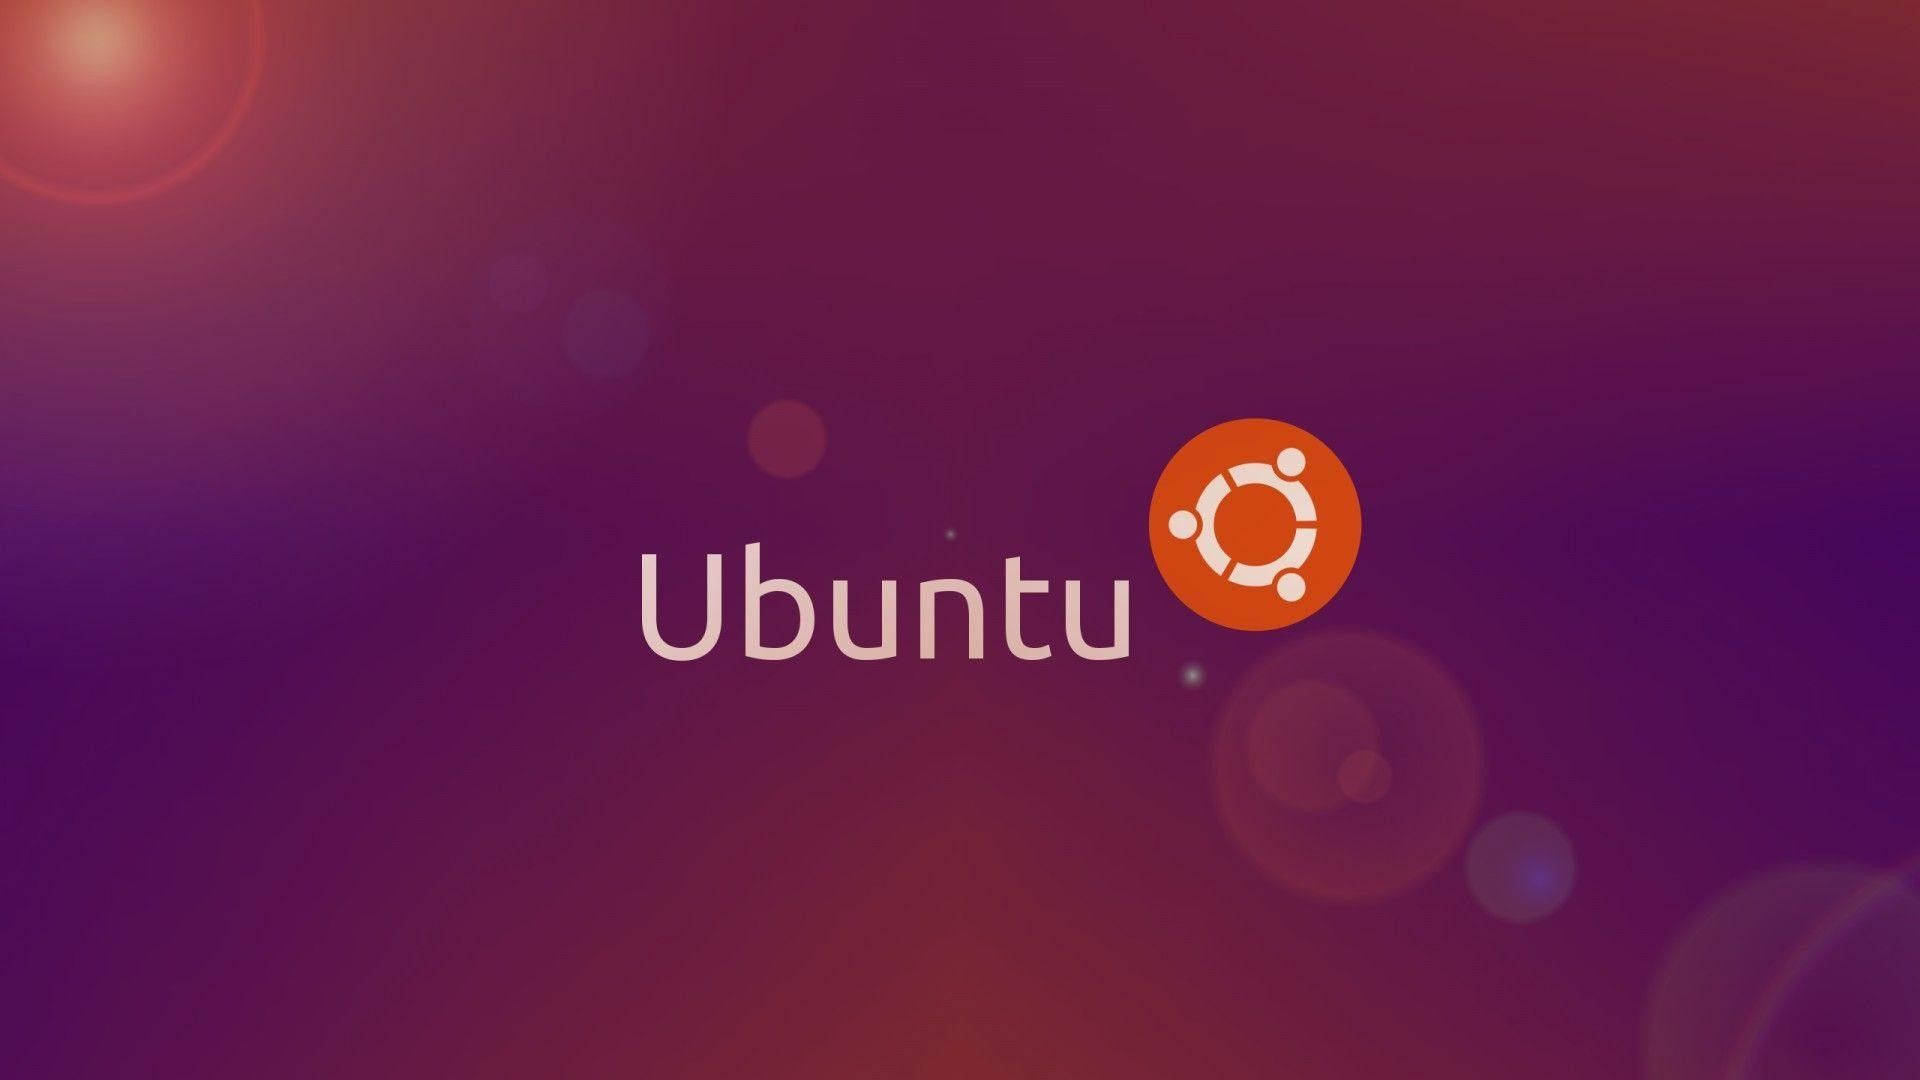 Iconic Ubuntu Hd Desktop